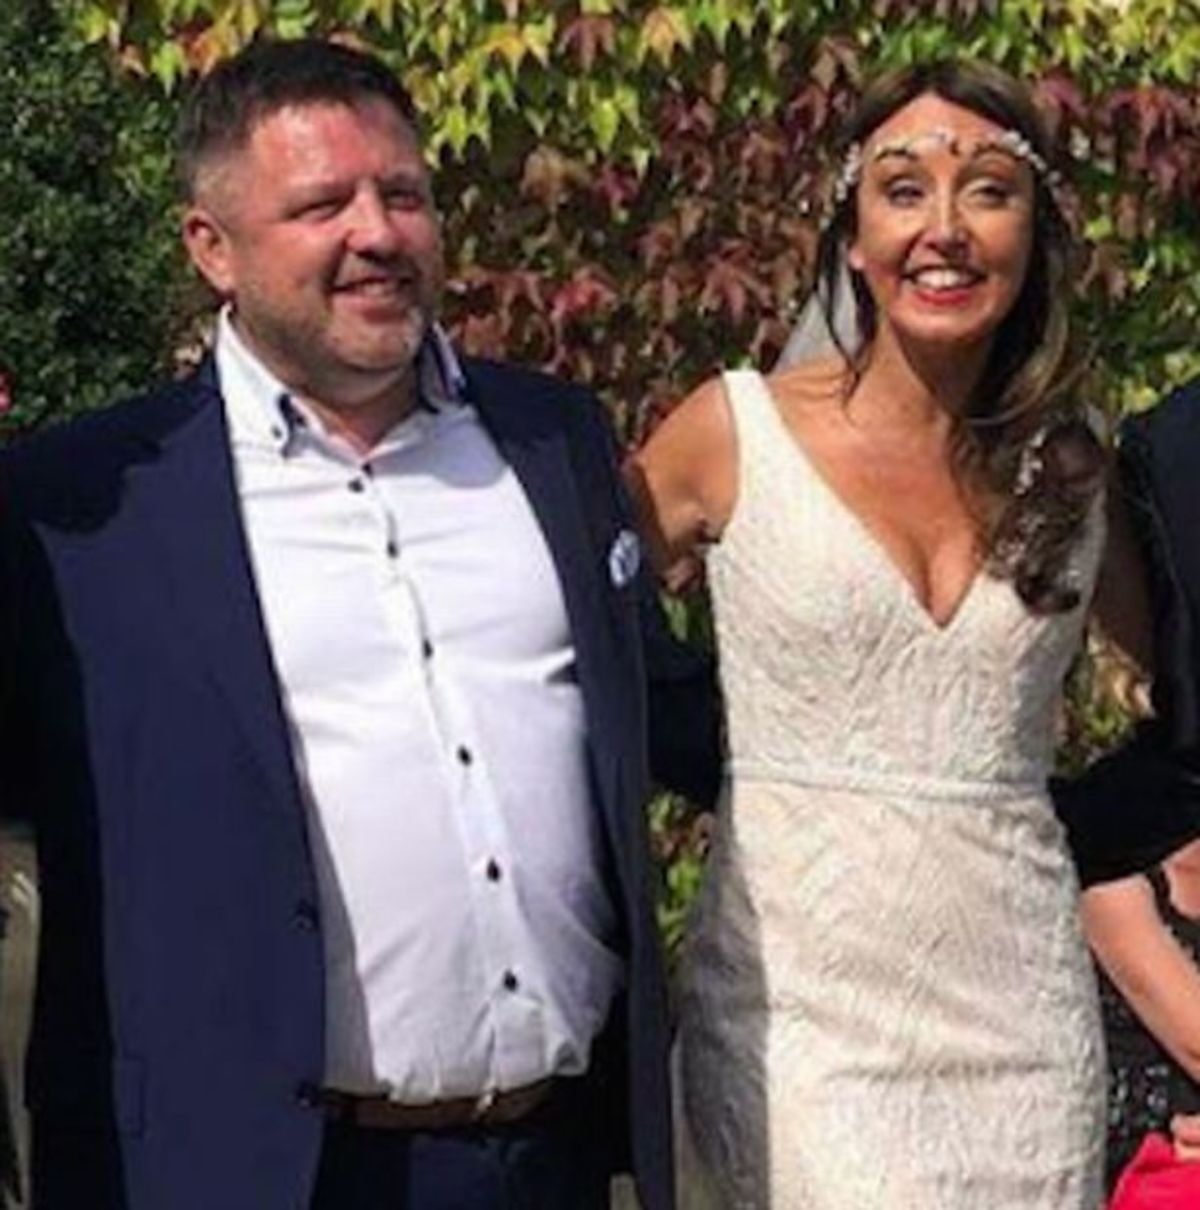 Φωτιά Αττική: Νεκρός ο Ιρλανδός, με σοβαρά εγκαύματα η νύφη – Τραγικό φινάλε στο γαμήλιο ταξίδι